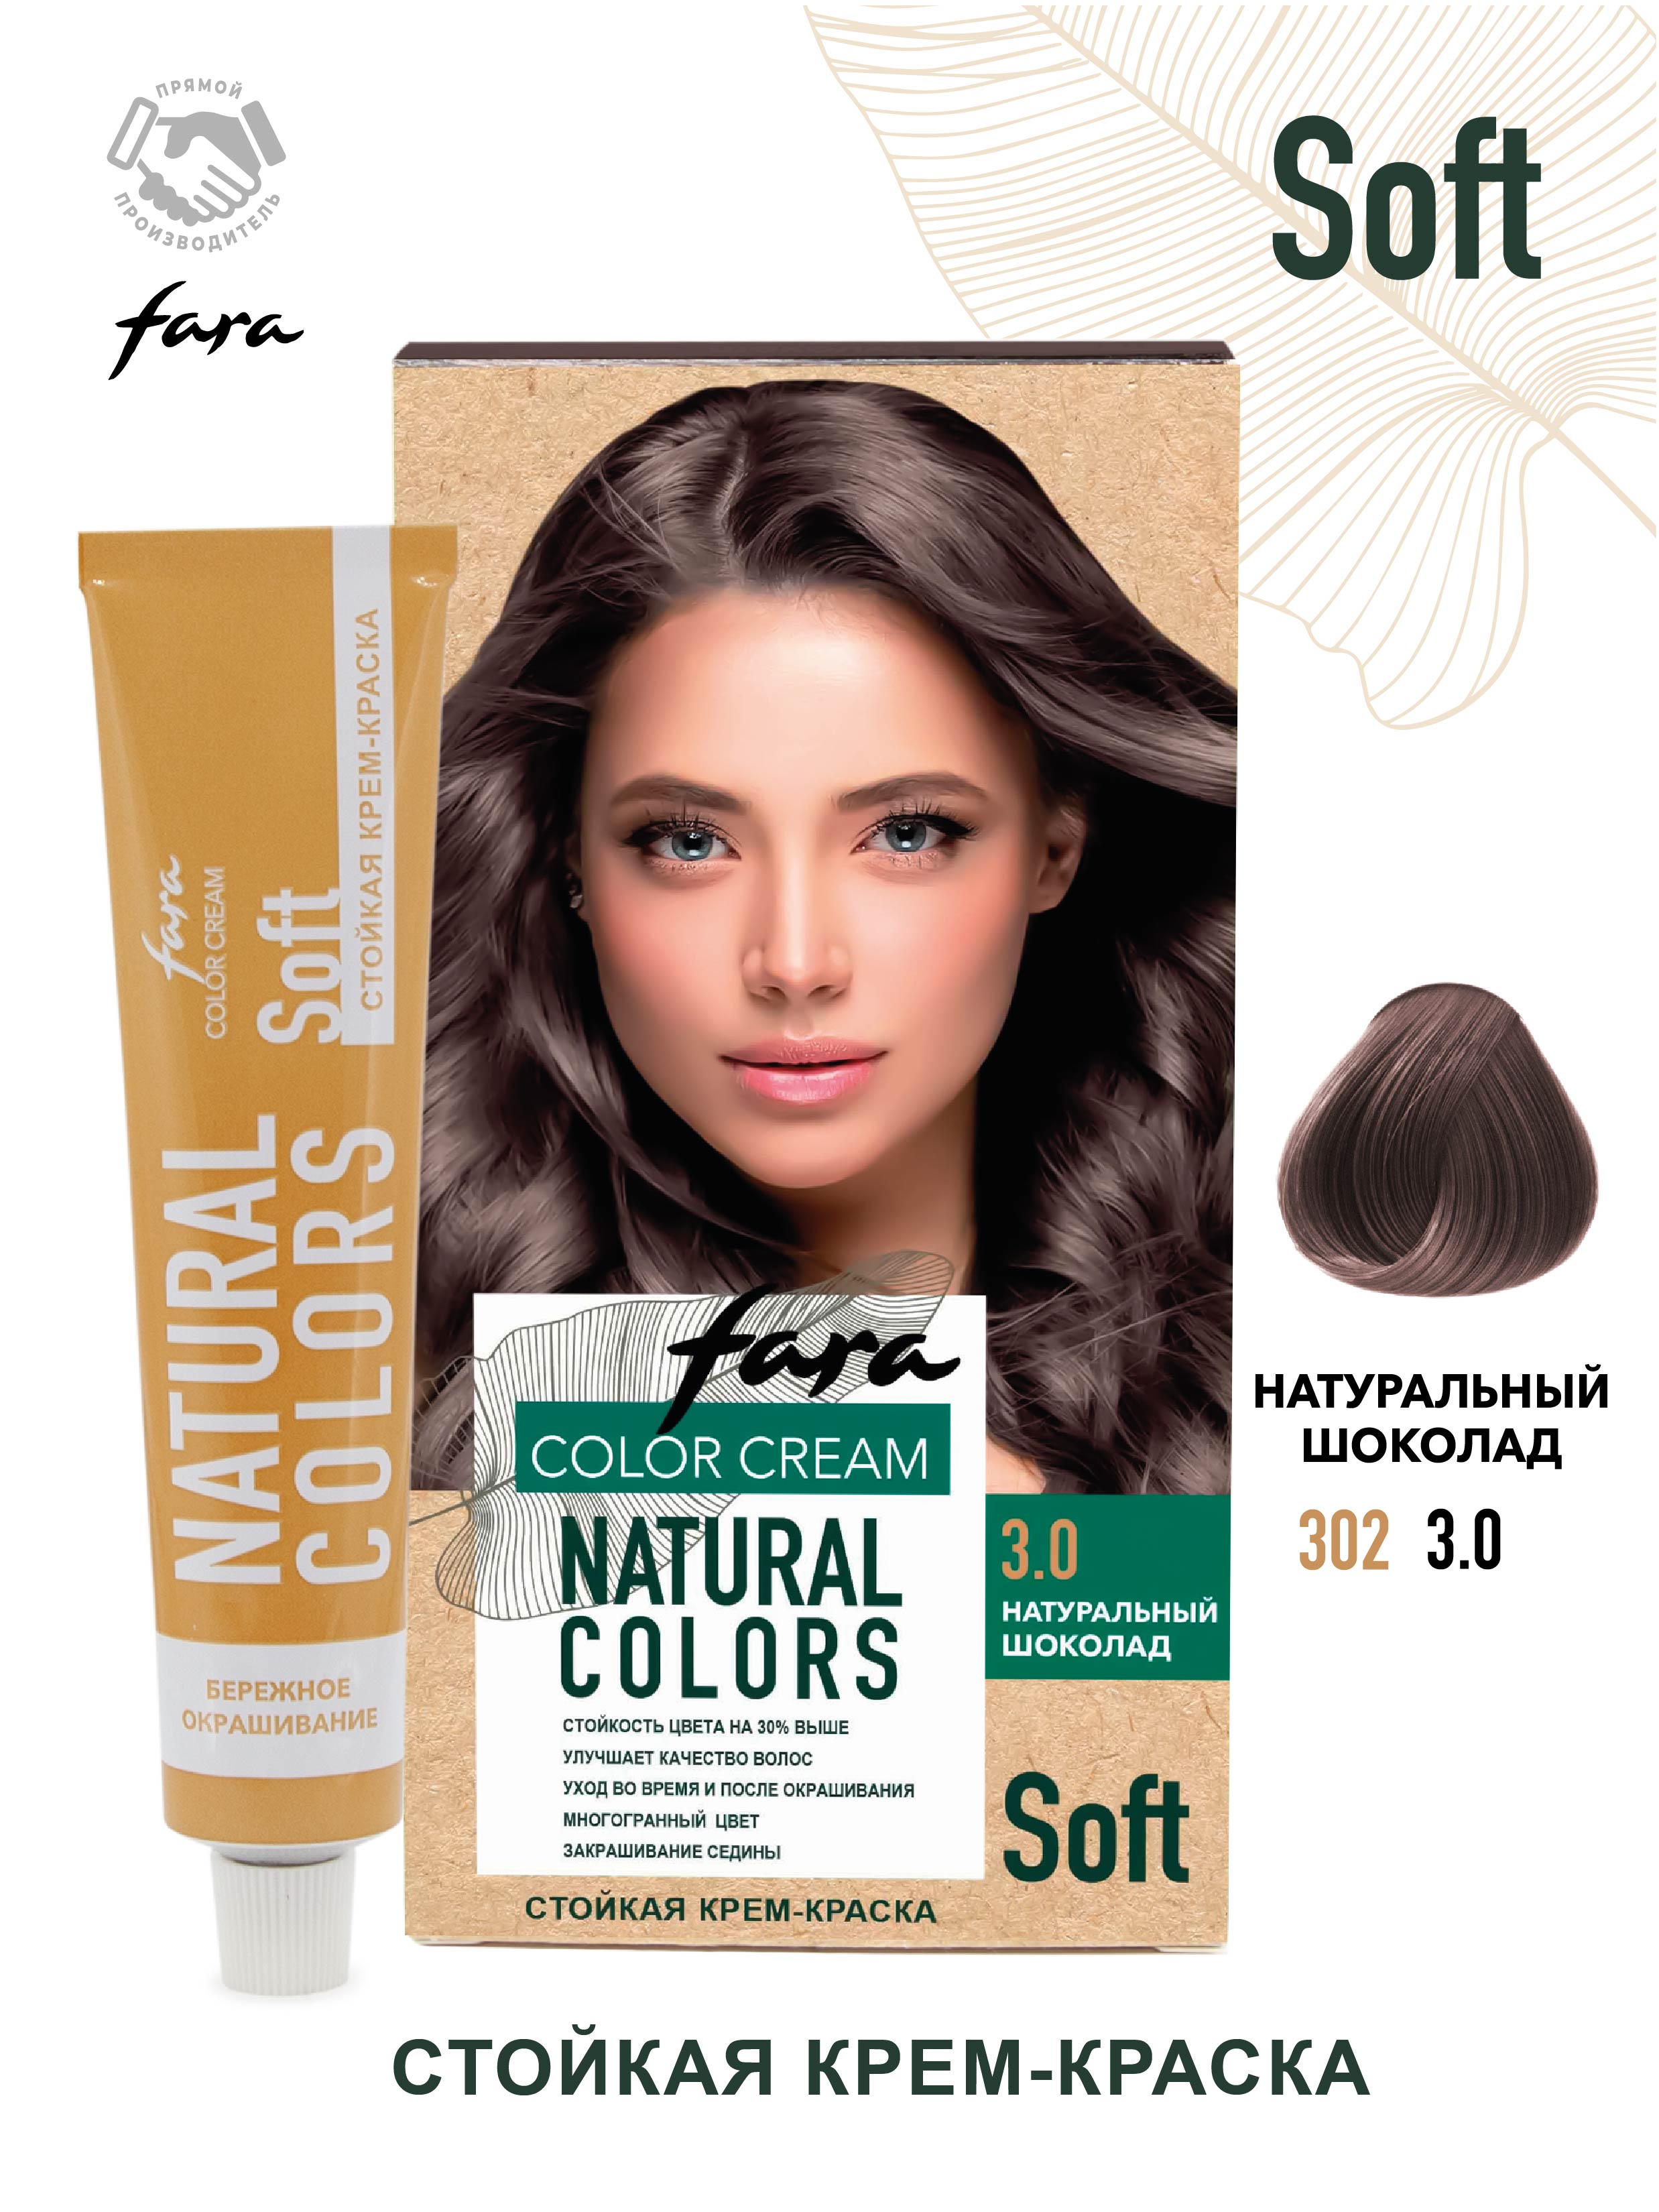 Краска для волос FARA Natural Colors Soft 302 натуральный шоколад - фото 1